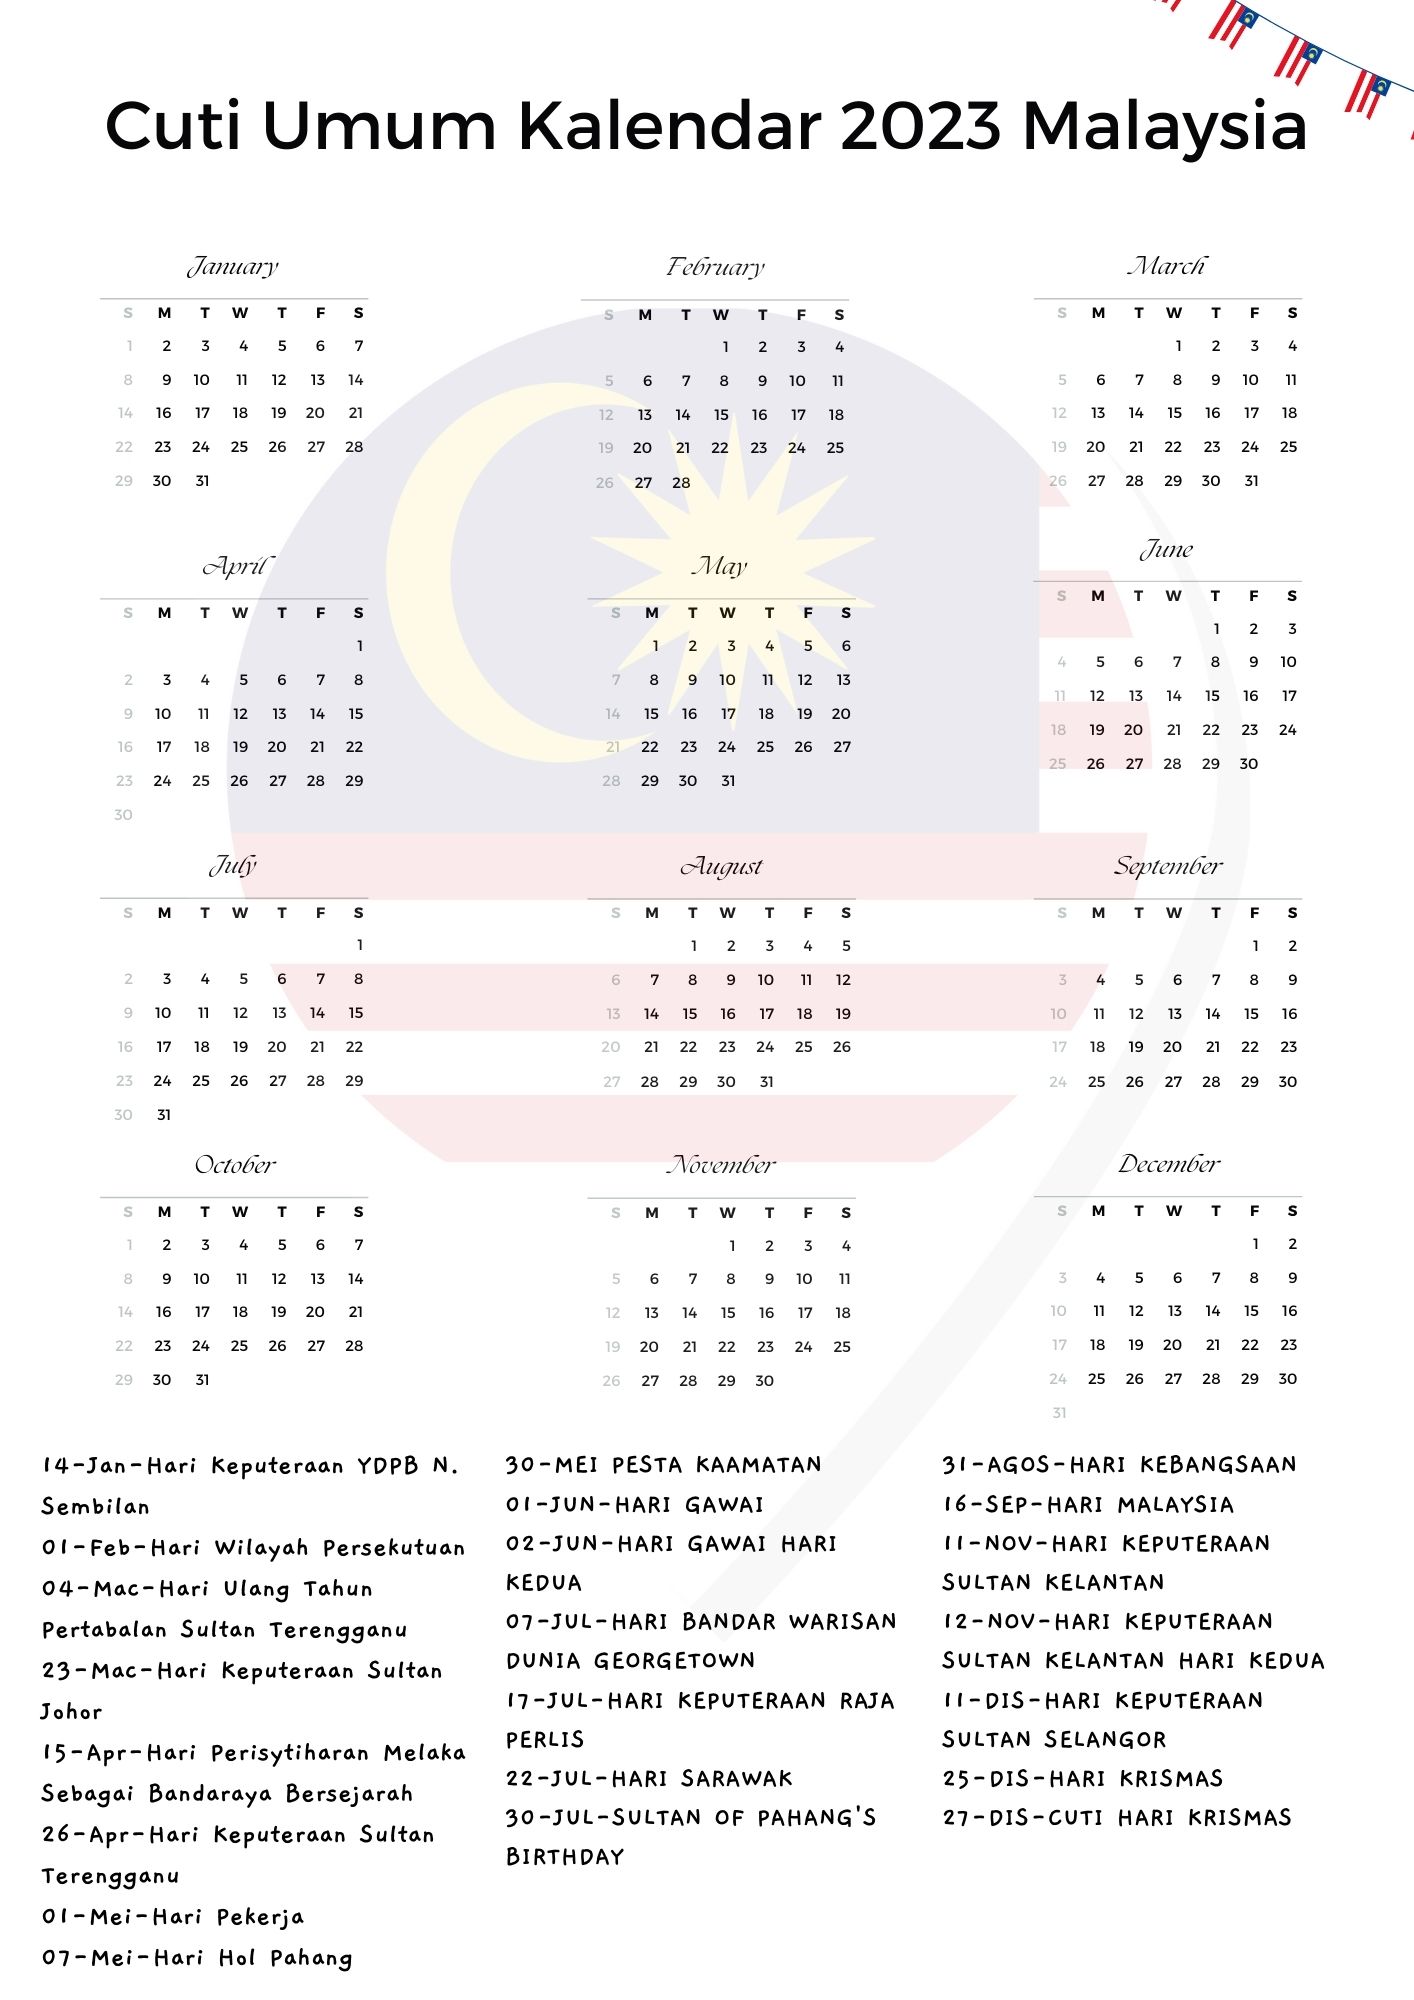 Cuti Umum Kalendar 2025 Malaysia ️